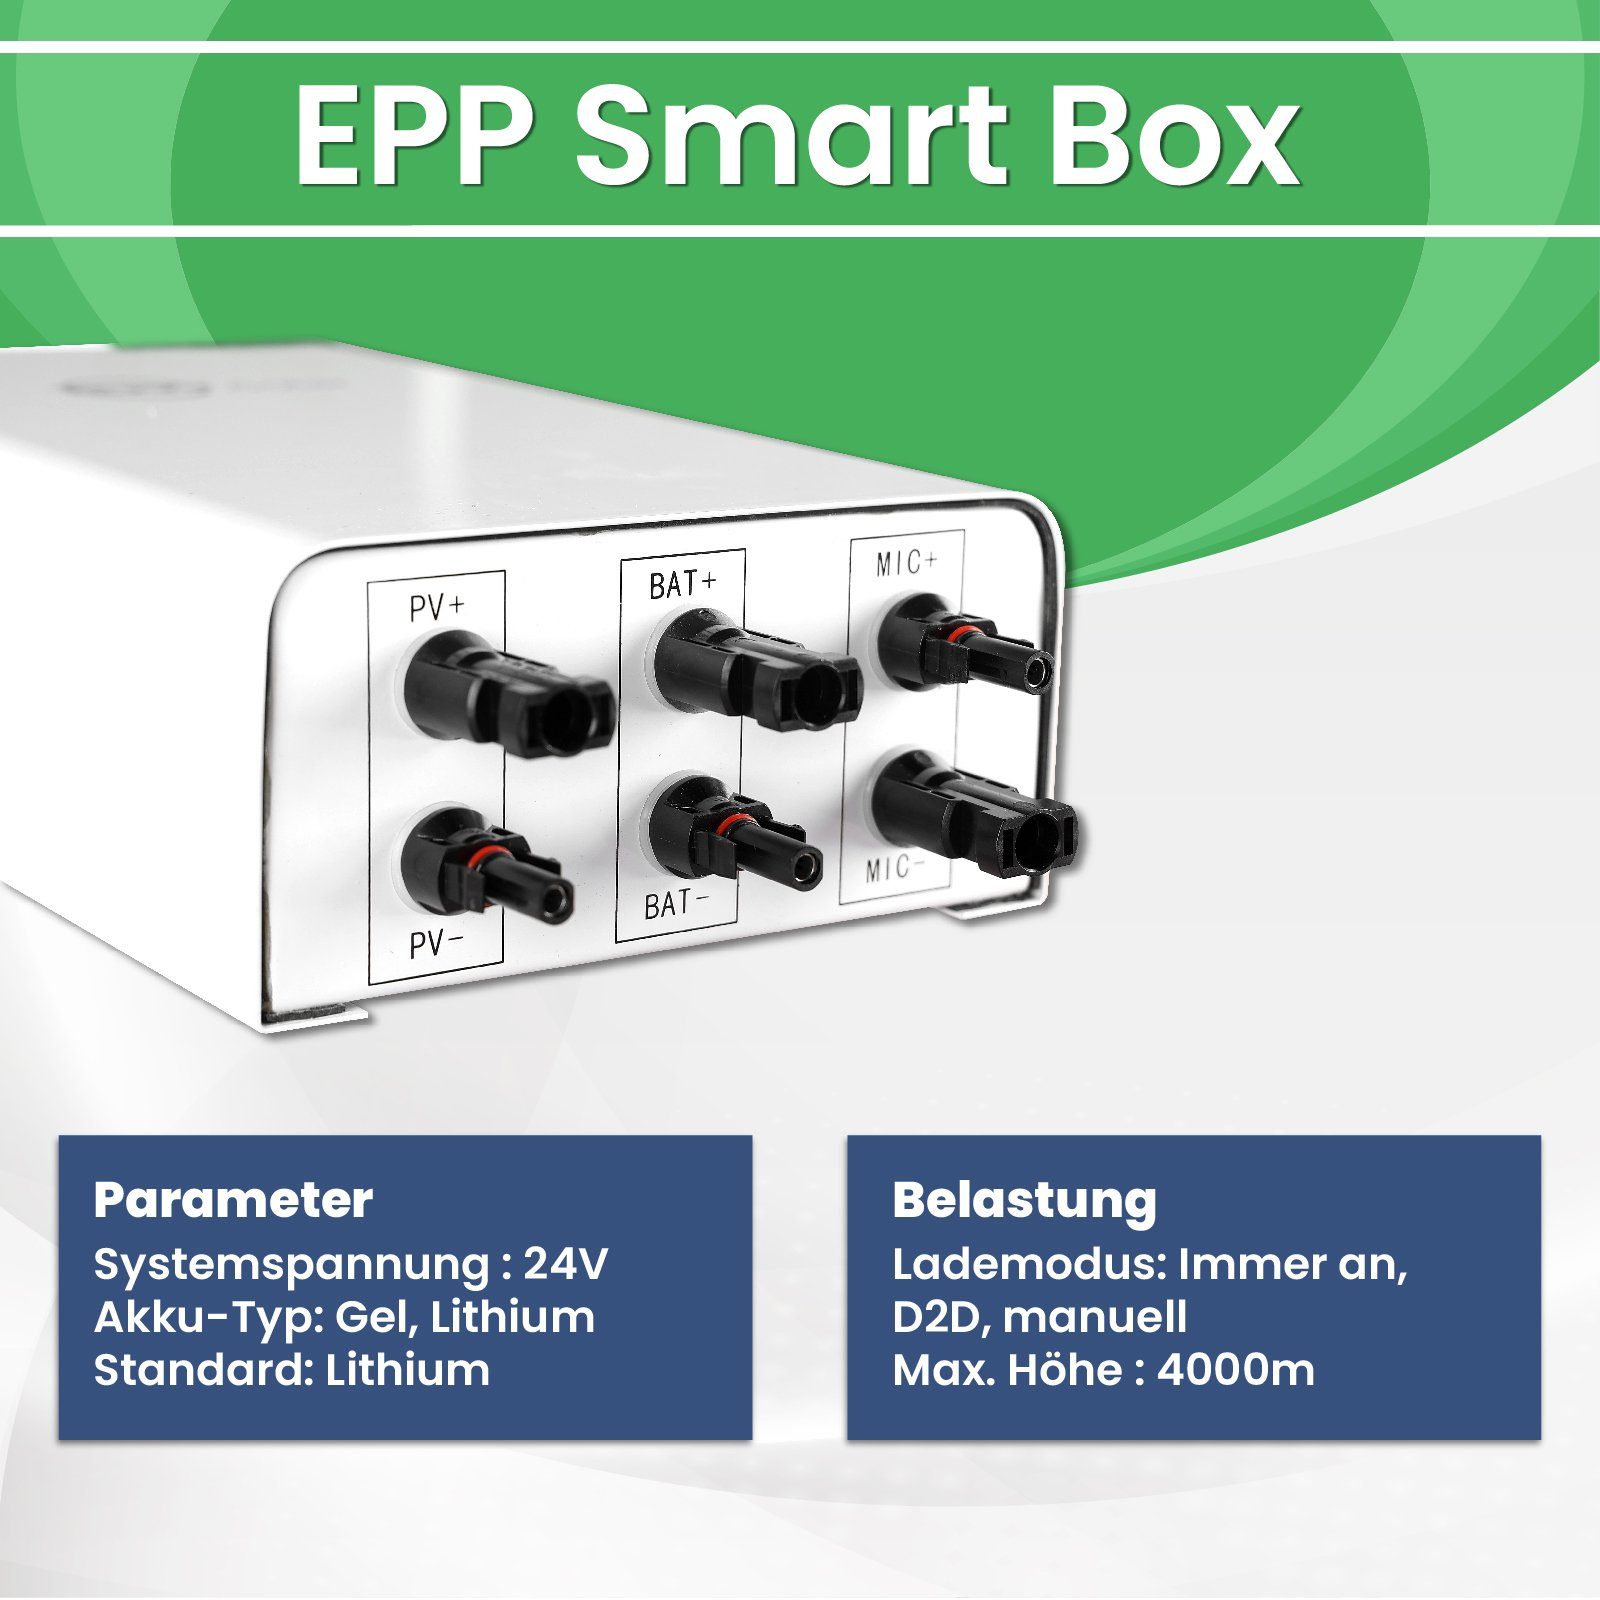 Speicher EPP.Solar Balkonkraftwerk mit EPP im Box Solaranlage Smart Nachrüstbar 40A